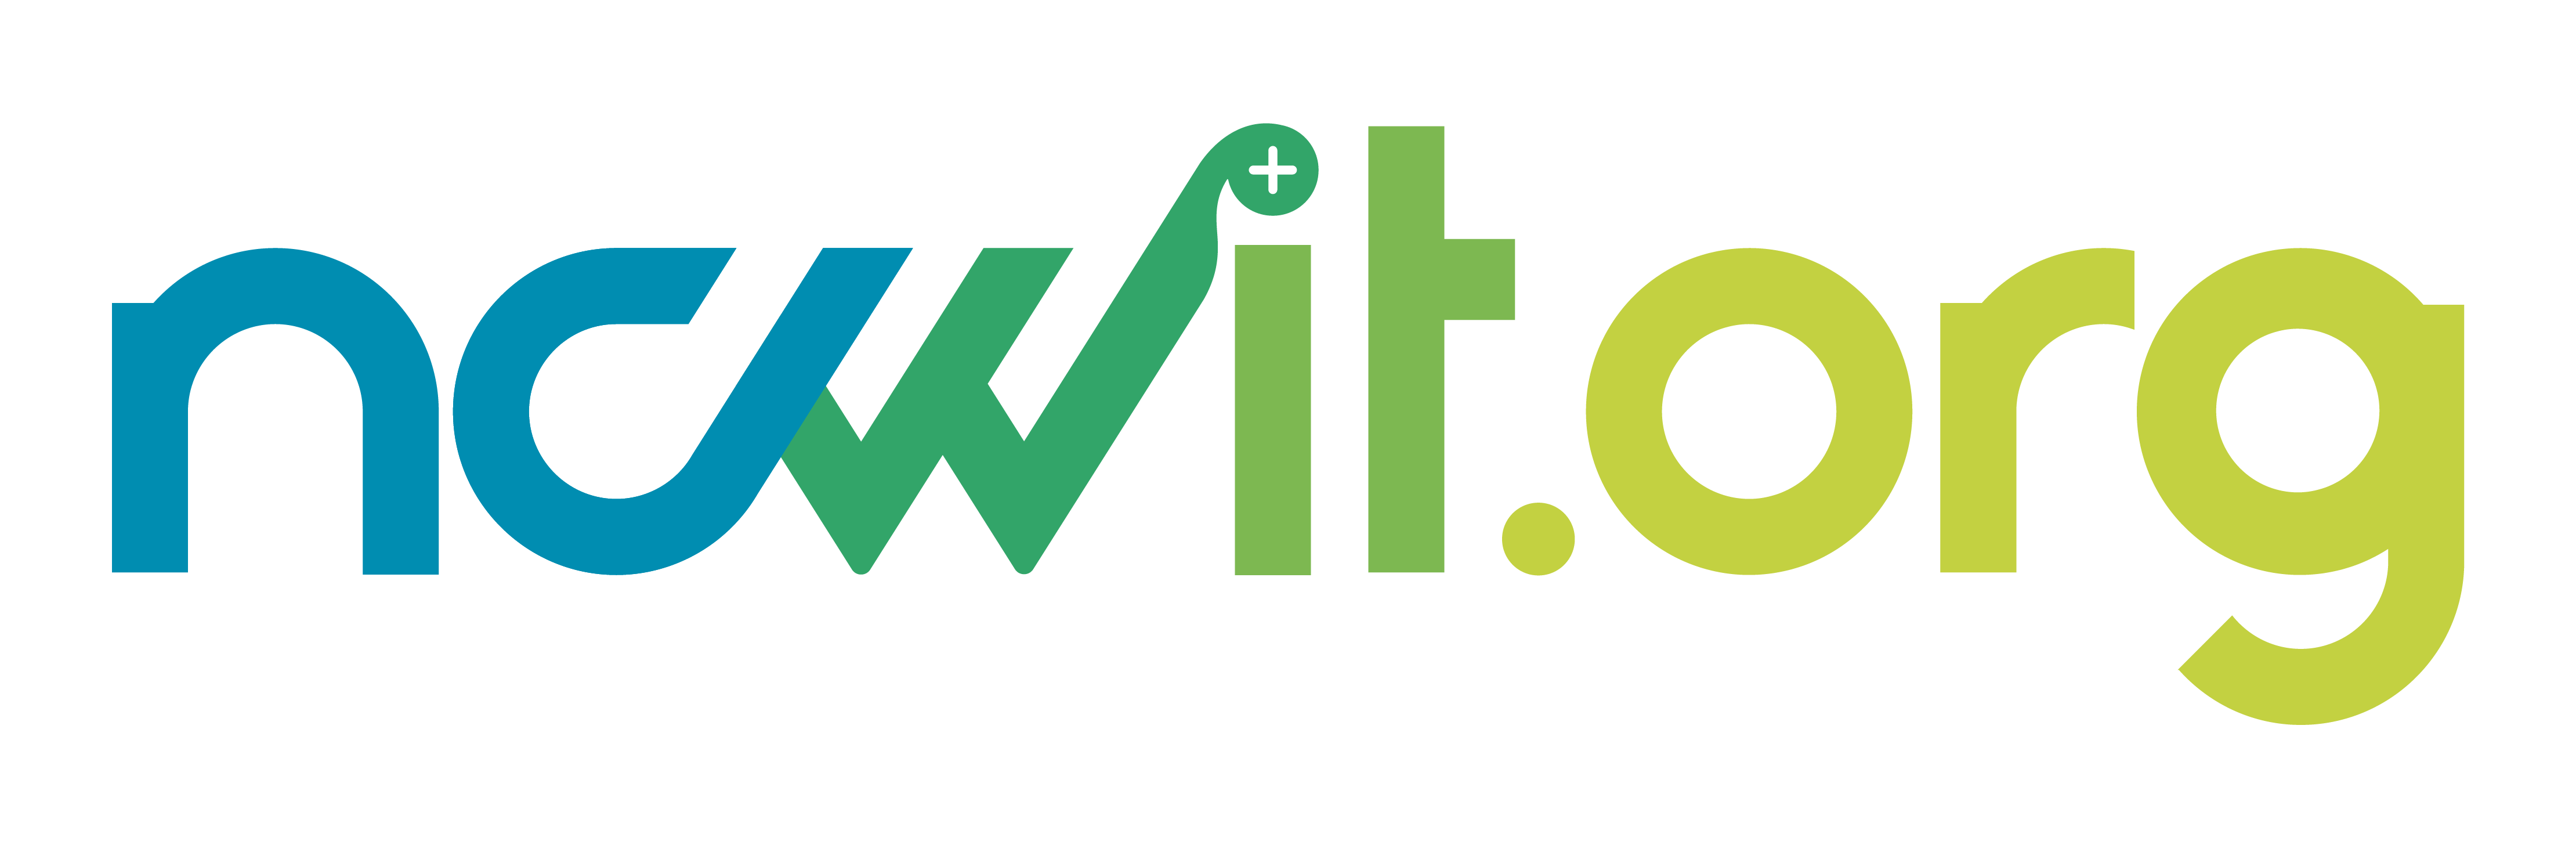 NCWIT    ||    ncwit.org logo